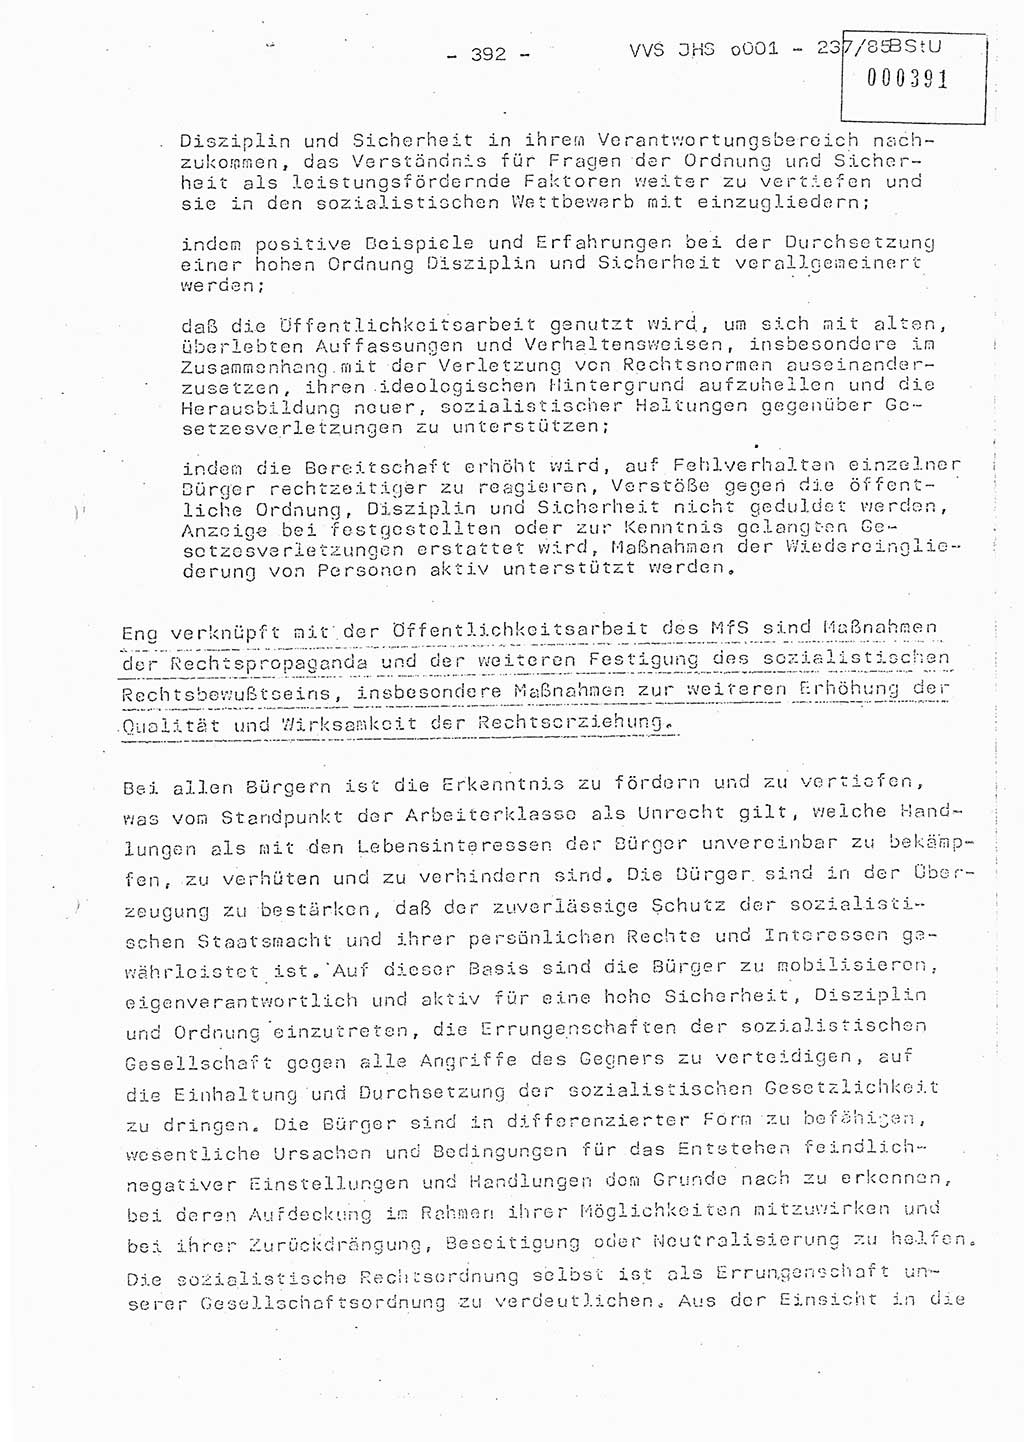 Dissertation Oberstleutnant Peter Jakulski (JHS), Oberstleutnat Christian Rudolph (HA Ⅸ), Major Horst Böttger (ZMD), Major Wolfgang Grüneberg (JHS), Major Albert Meutsch (JHS), Ministerium für Staatssicherheit (MfS) [Deutsche Demokratische Republik (DDR)], Juristische Hochschule (JHS), Vertrauliche Verschlußsache (VVS) o001-237/85, Potsdam 1985, Seite 392 (Diss. MfS DDR JHS VVS o001-237/85 1985, S. 392)